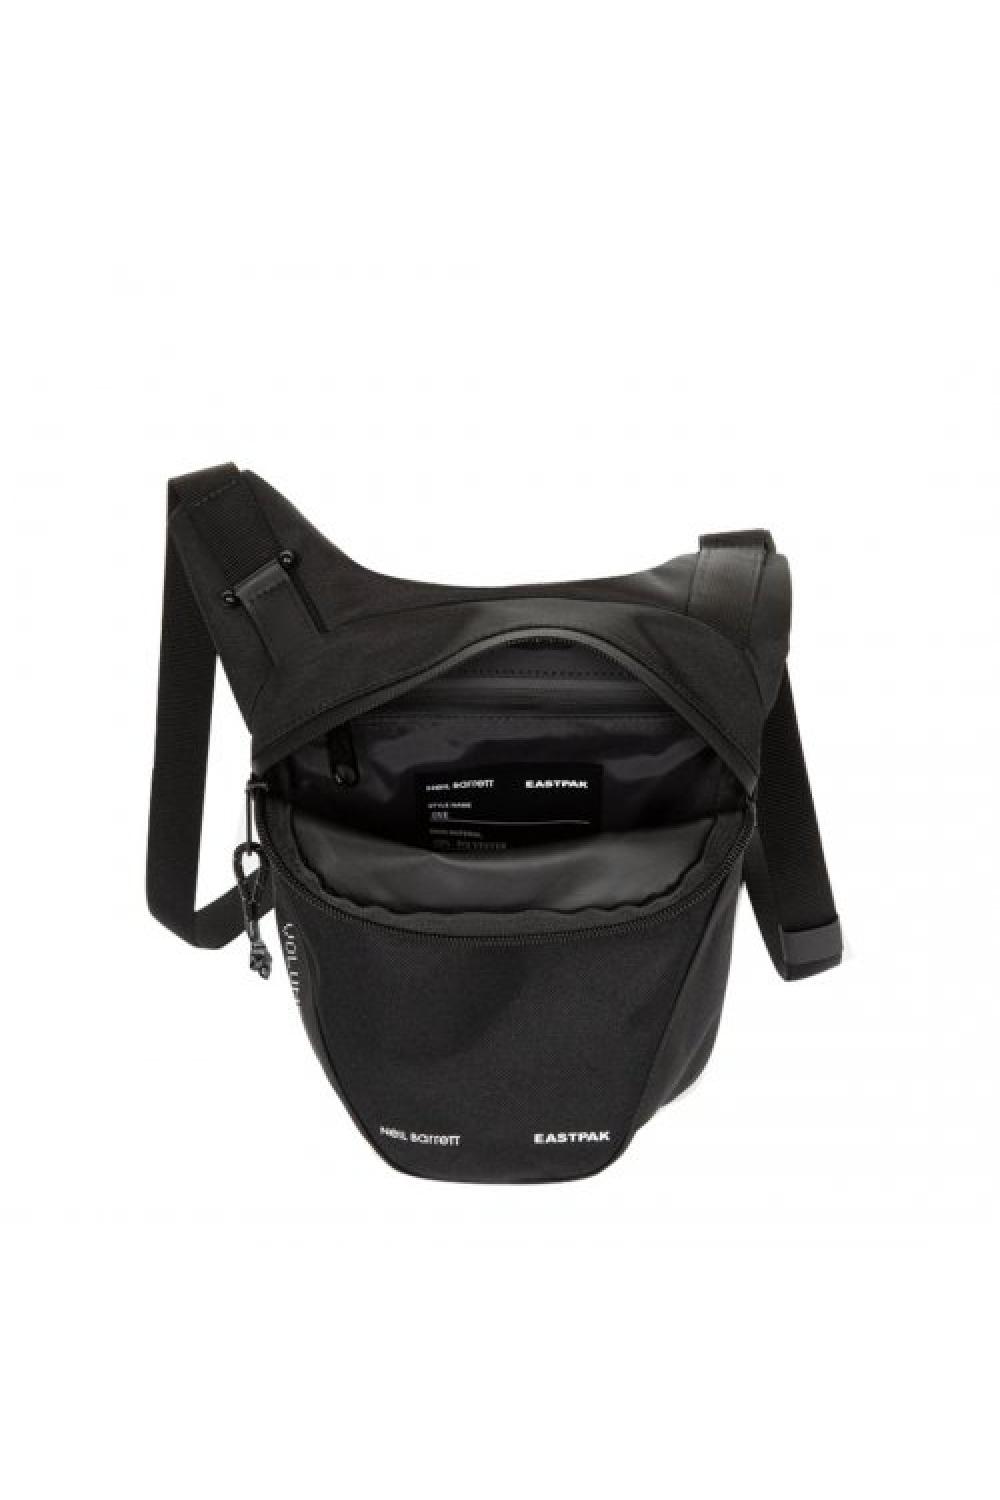 EASTPAK x Neil Barrett Cross Body Bag One (3 Liter) - Μαύρο (EK0A5BB5-S08)